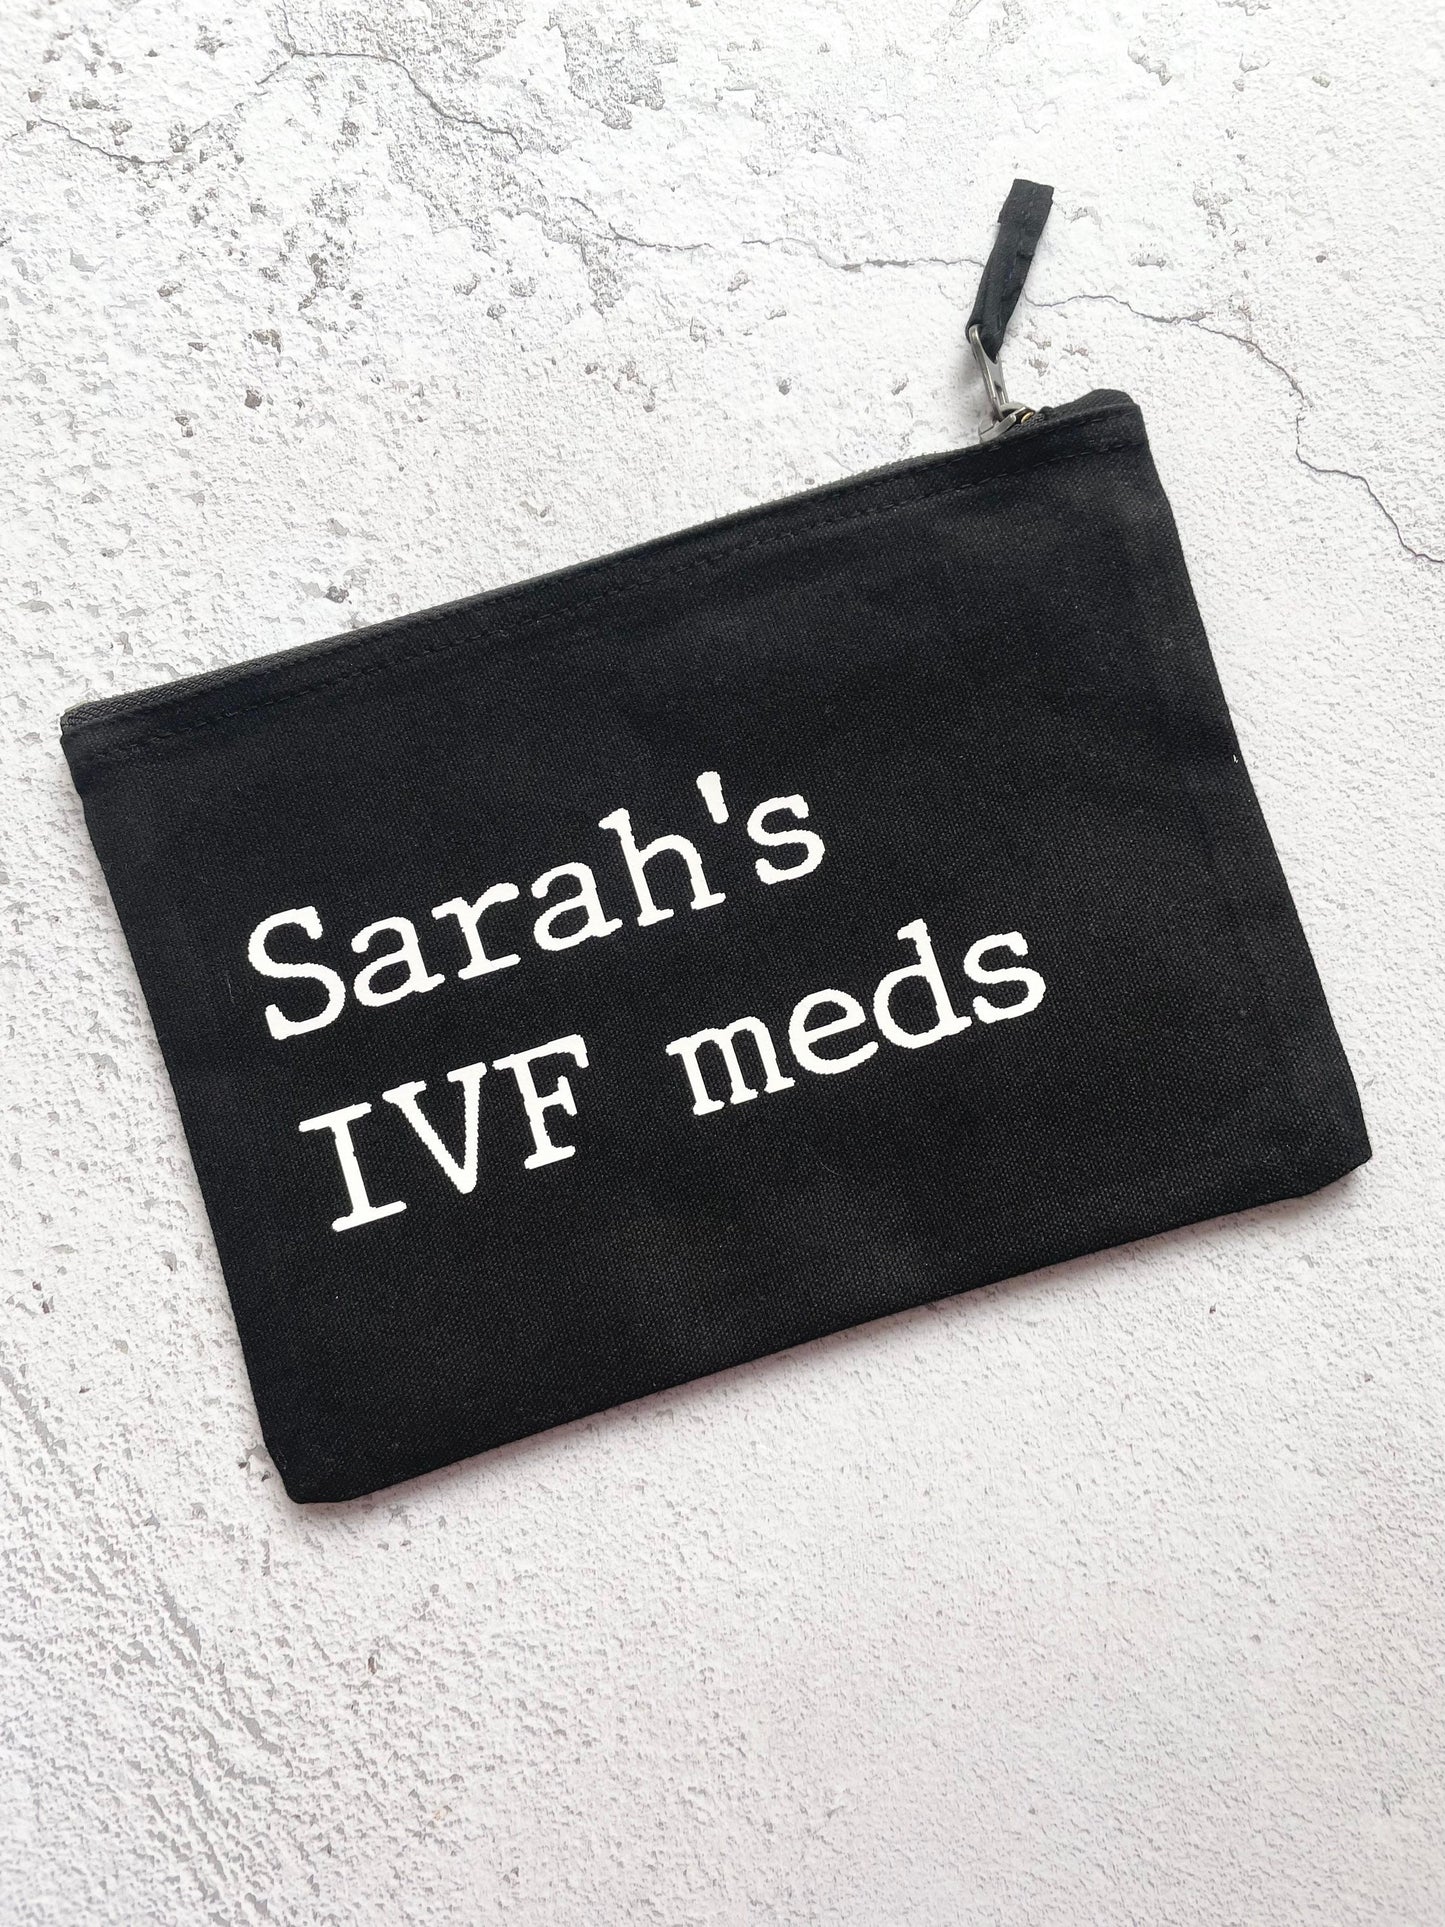 Personalised IVF meds bag, ivf shots case, travel case for ivf tablets, baby making meds case.